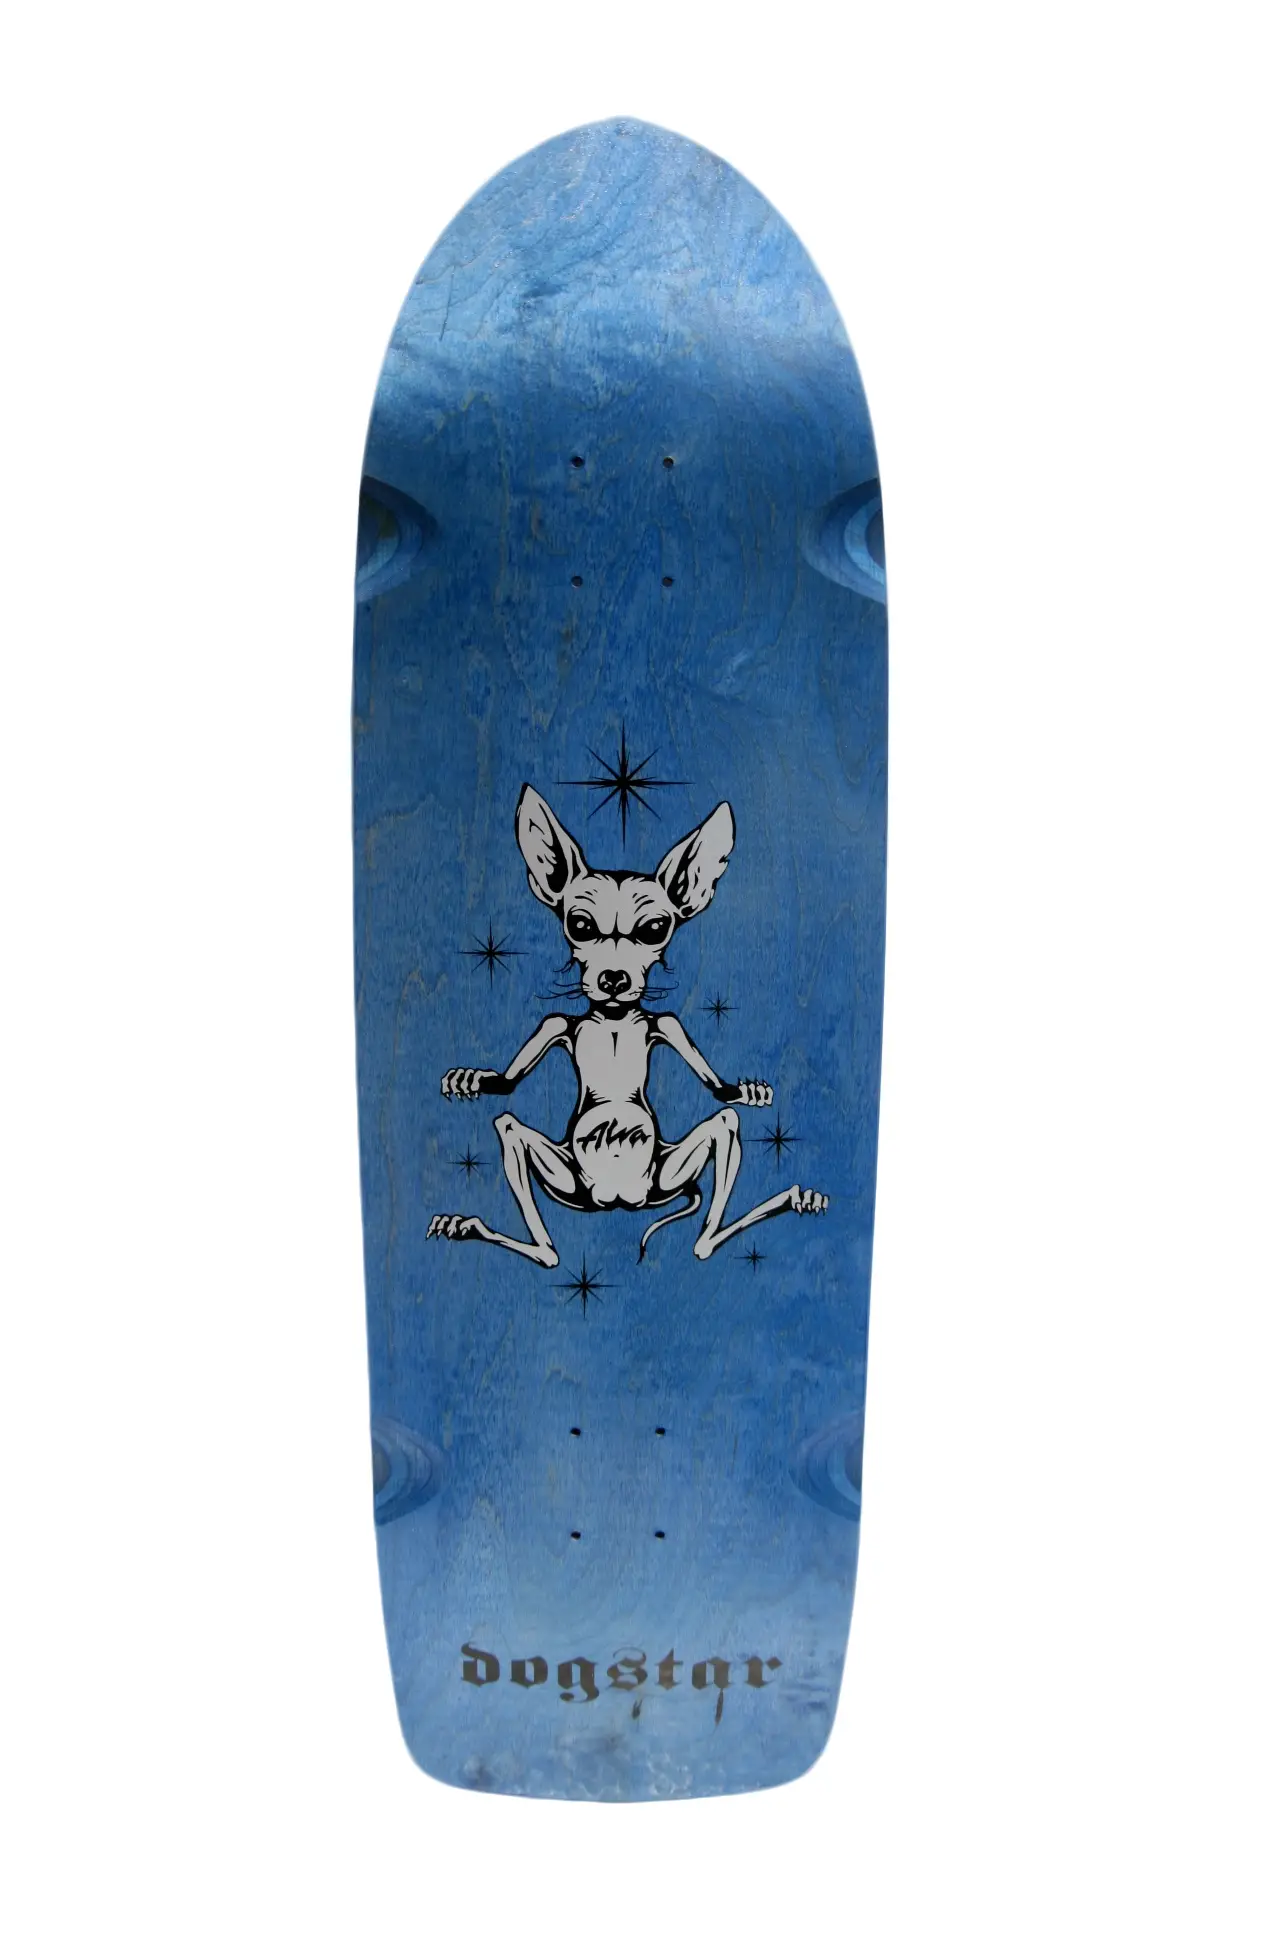 Alva dogstar blue Skateboard Deck